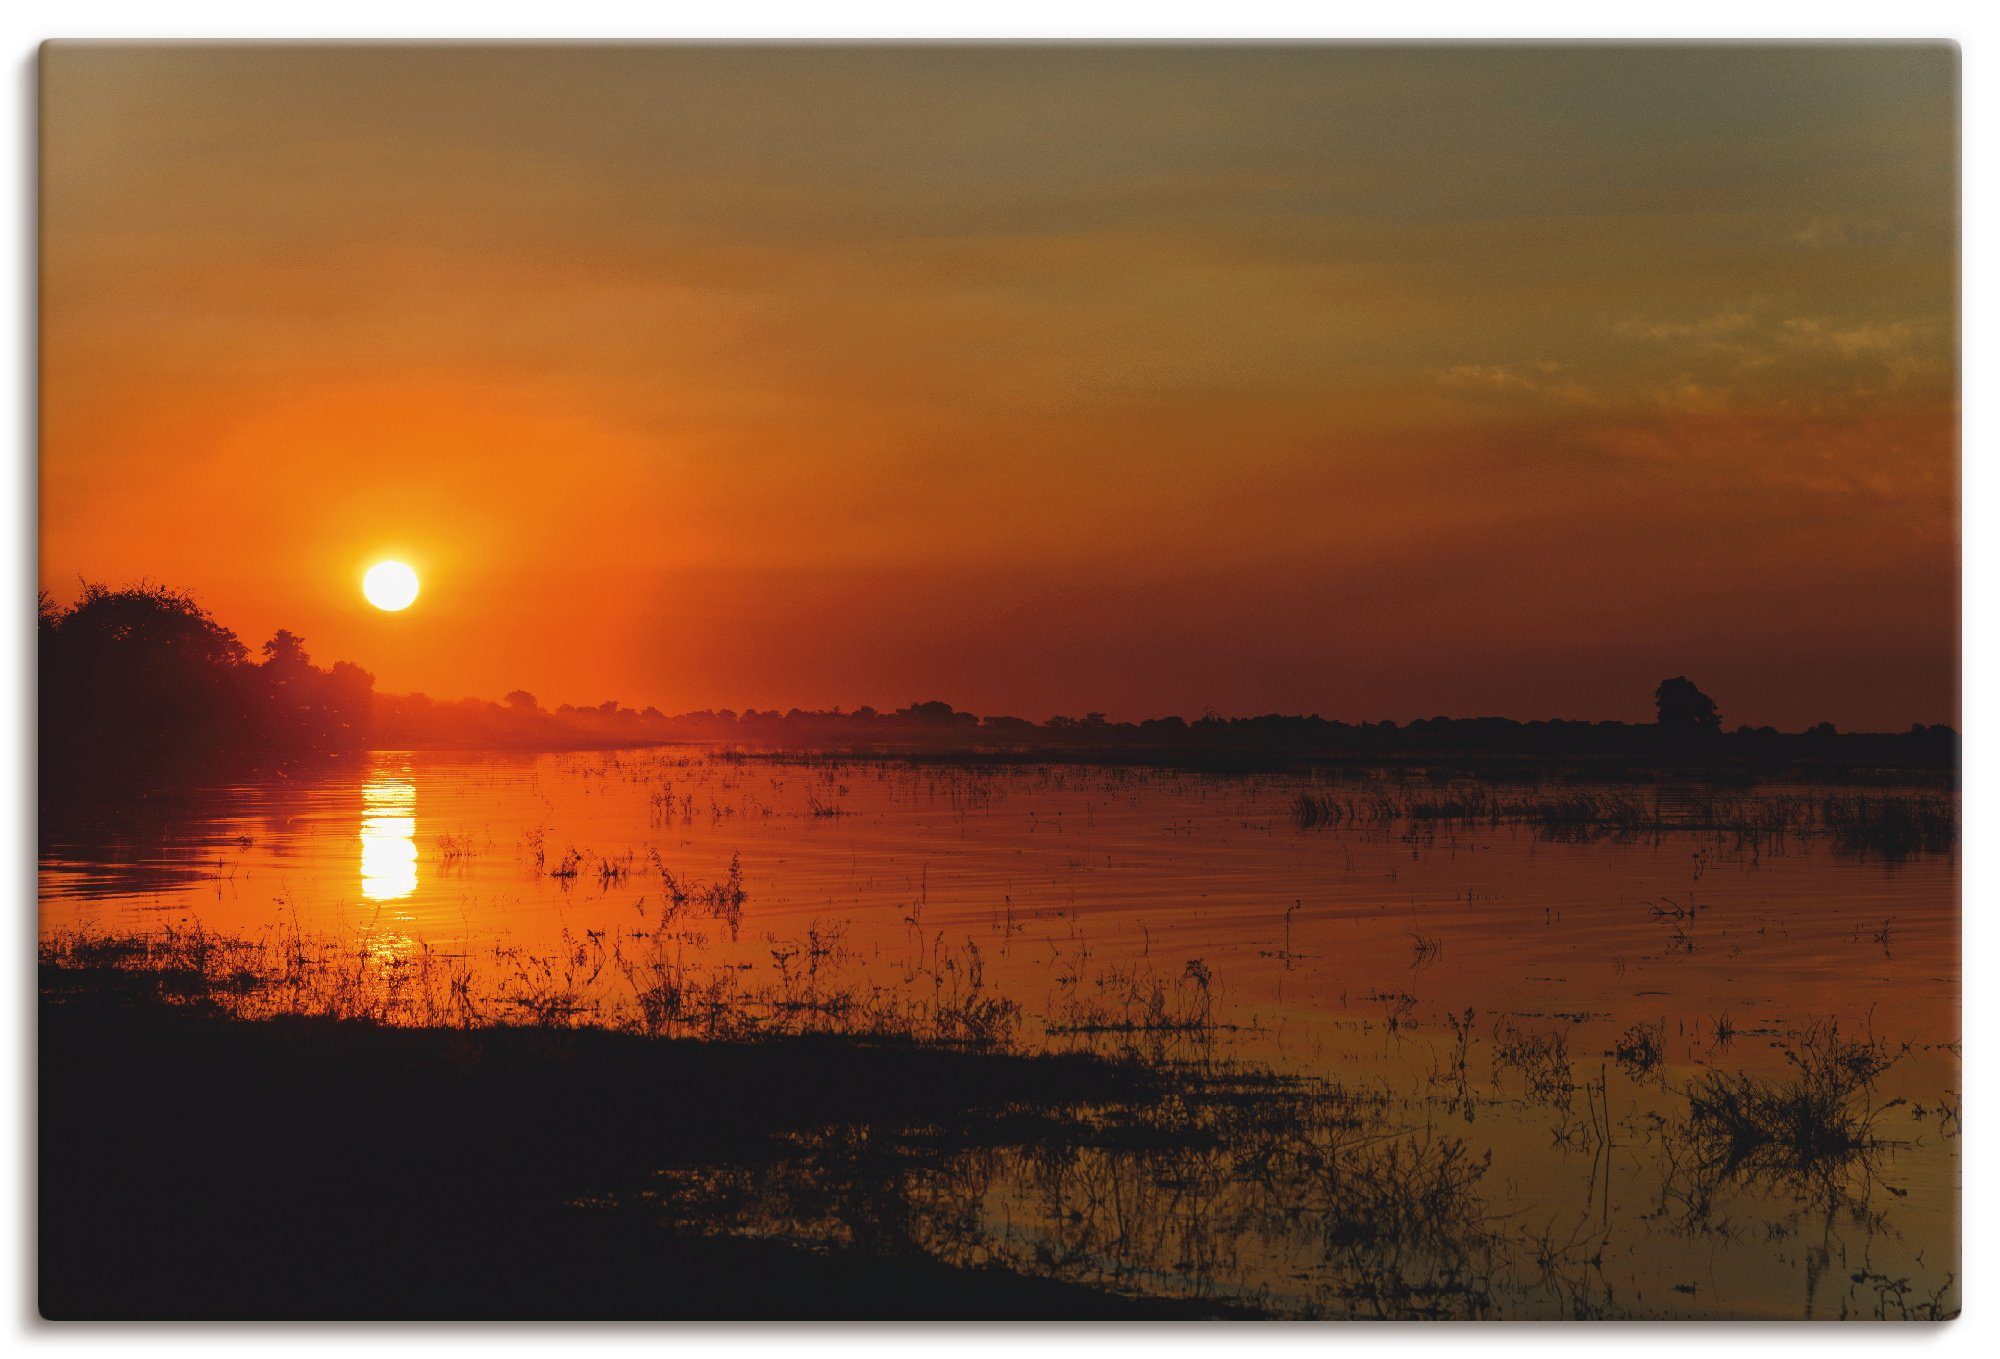 St), Fluss (1 Artland Sonnenuntergang am Poster Afrika Wandbild als Wandaufkleber Alubild, Chobe, Größen Leinwandbild, oder in versch.